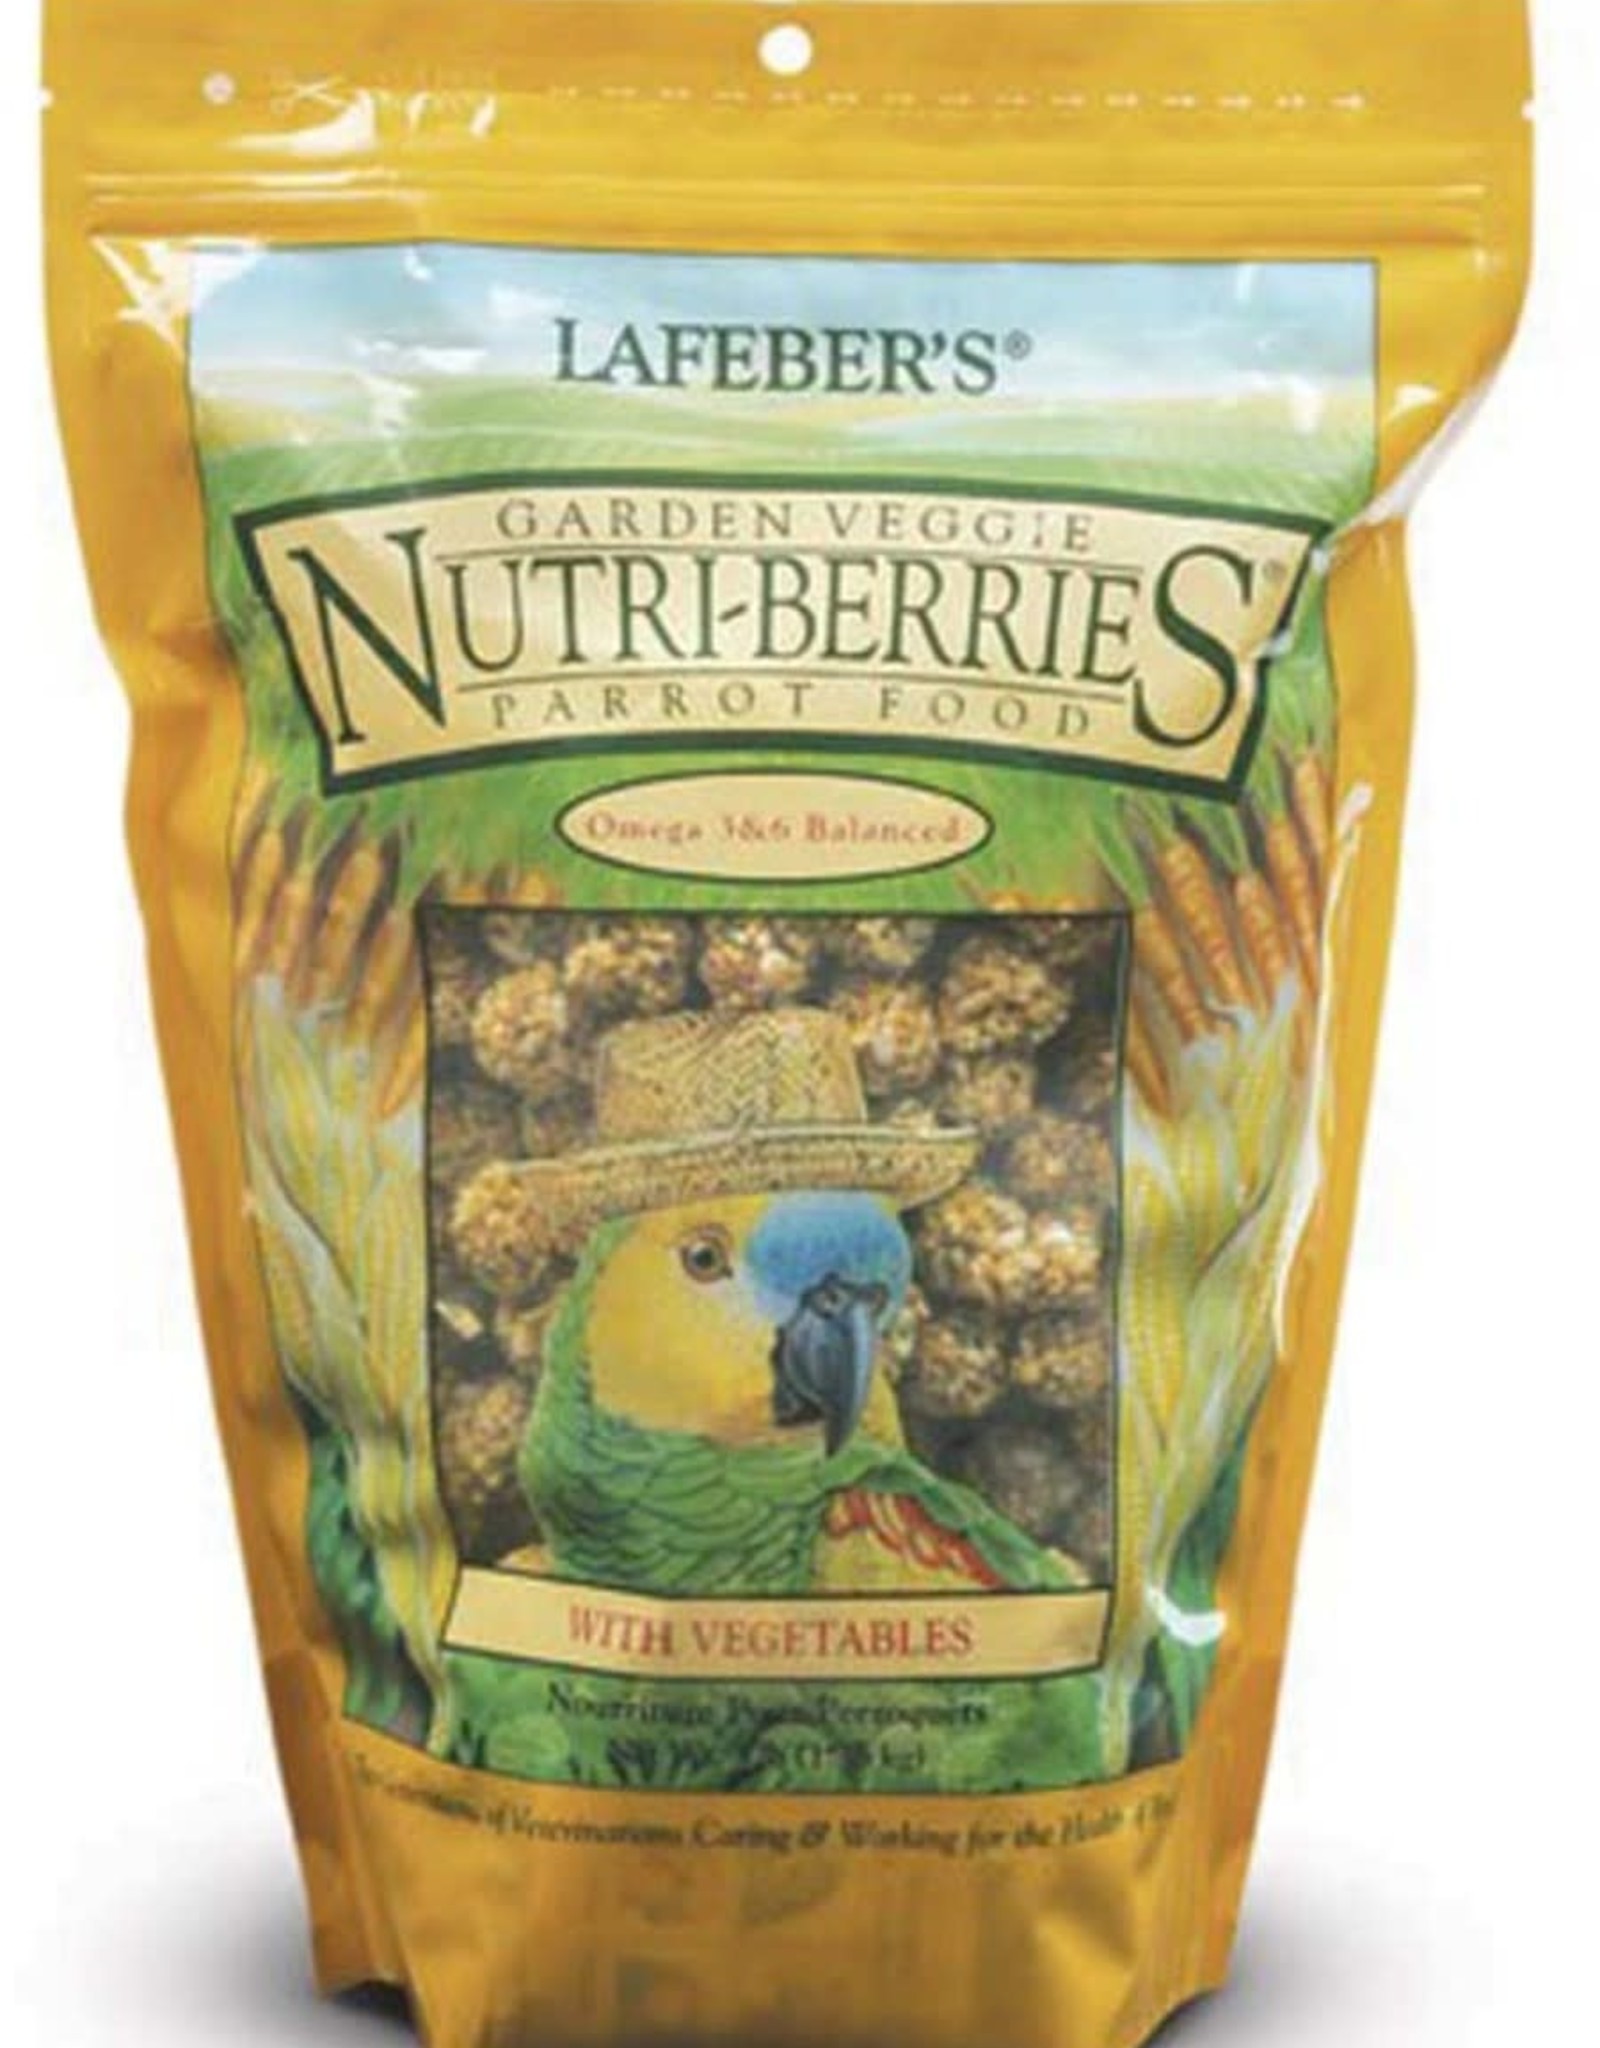 LAFEBER'S LAFEBER'S- NUTRI-BERRIES- PELLETED DIET/TREAT- 8.25X8.25X6- 3LB- PARROT- GARDEN VEGGIE